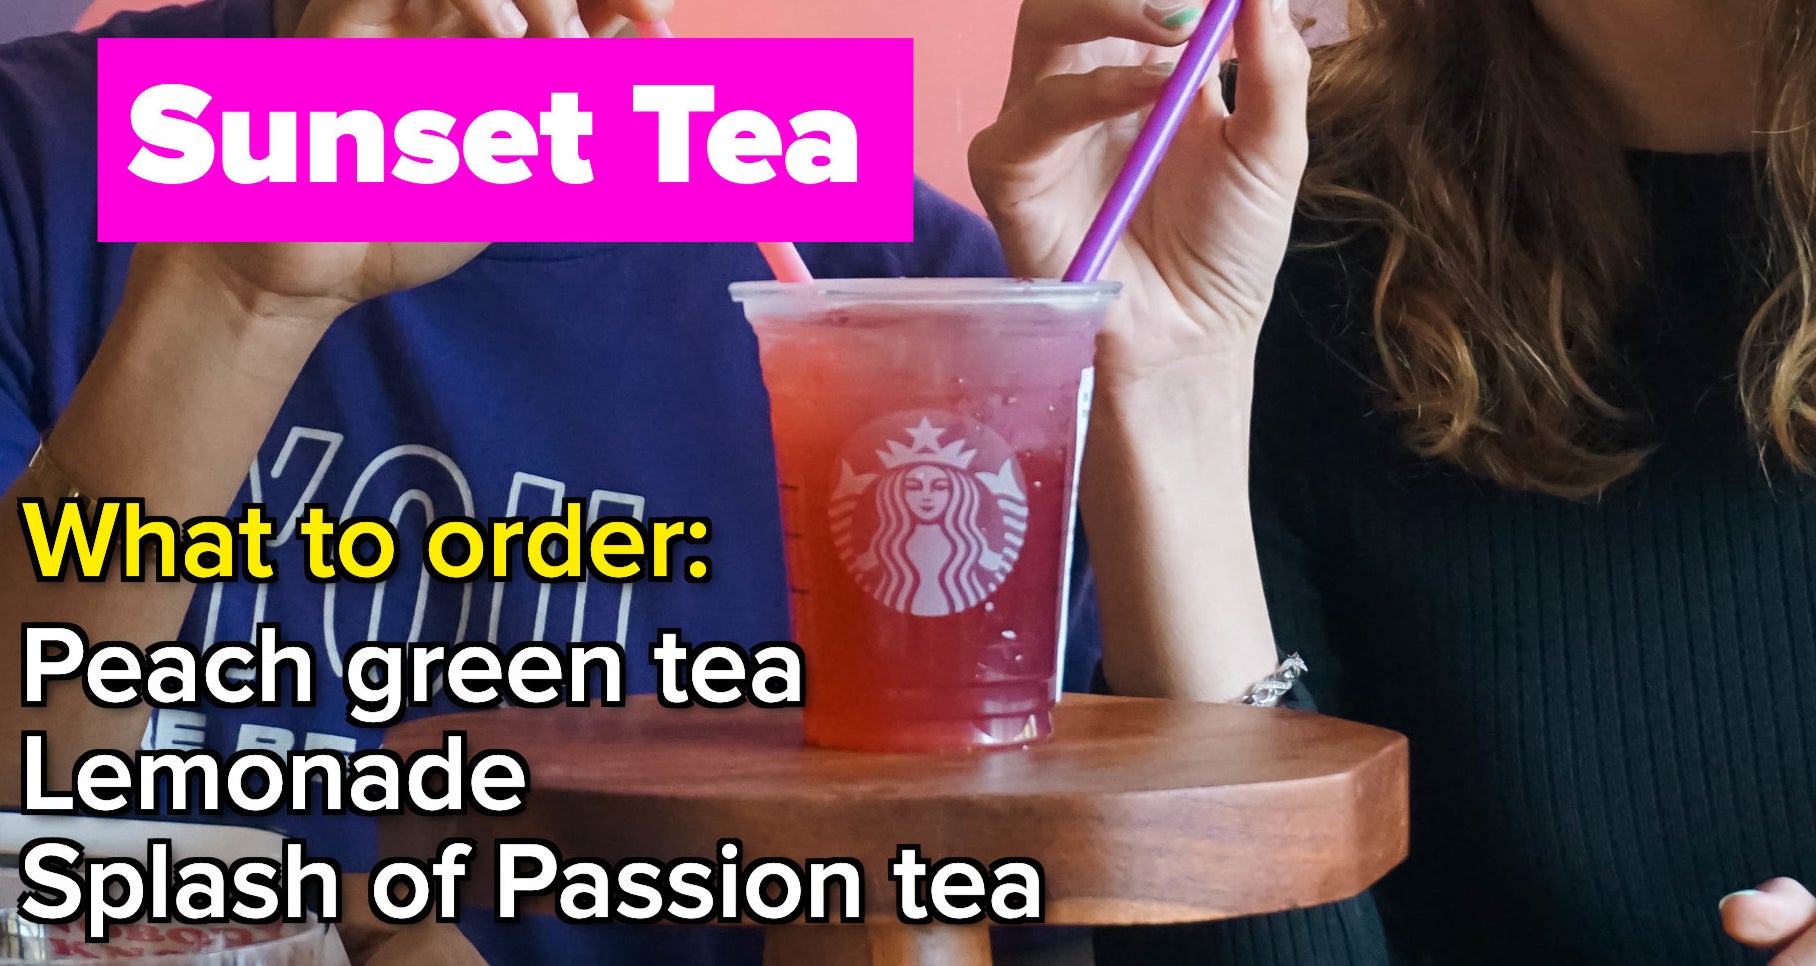 Starbucks Sunset Tea drink